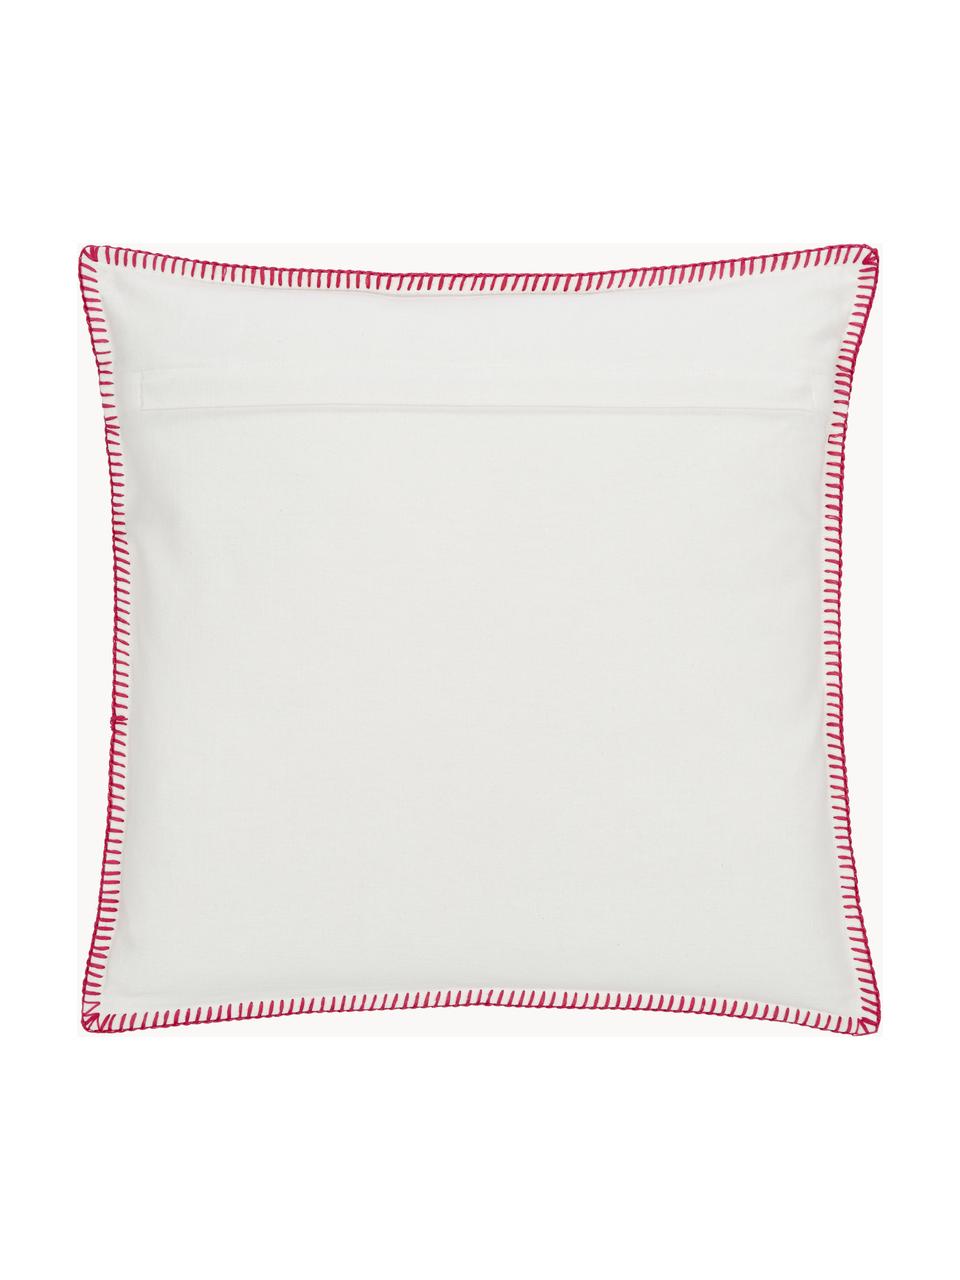 Baumwoll-Kissenhülle Folk mit besticktem Muster, 100% Baumwolle, Pink, Weiß, B 45 x L 45 cm